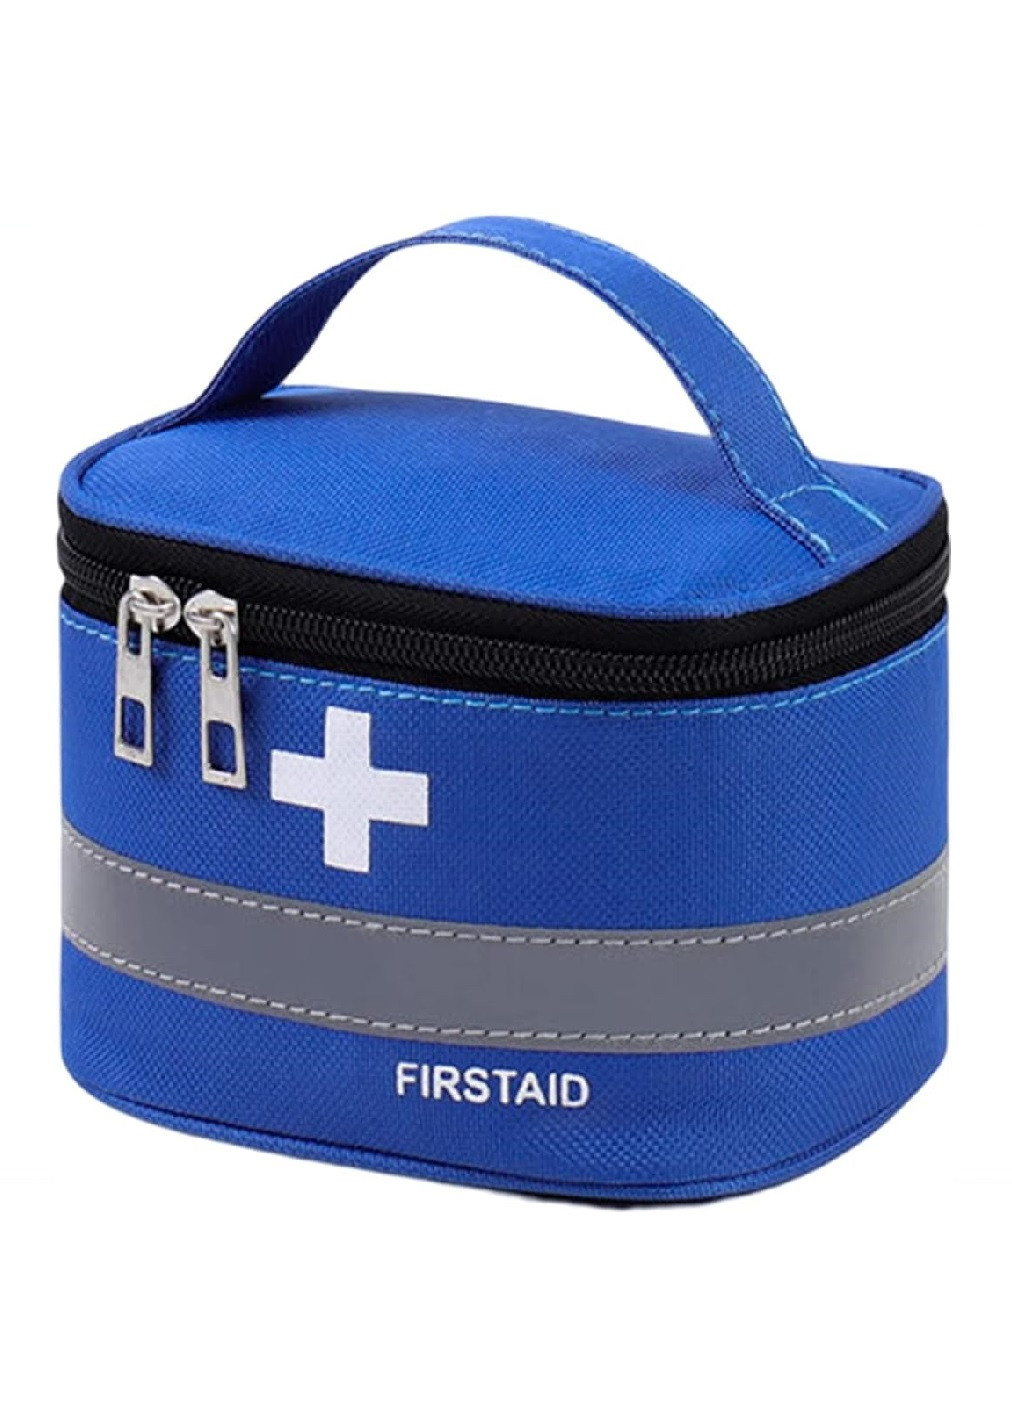 Аптечка сумка органайзер компактная портативная для медикаментов путешествий дома 14x10x10 см (474863-Prob) Синяя Unbranded (260041440)